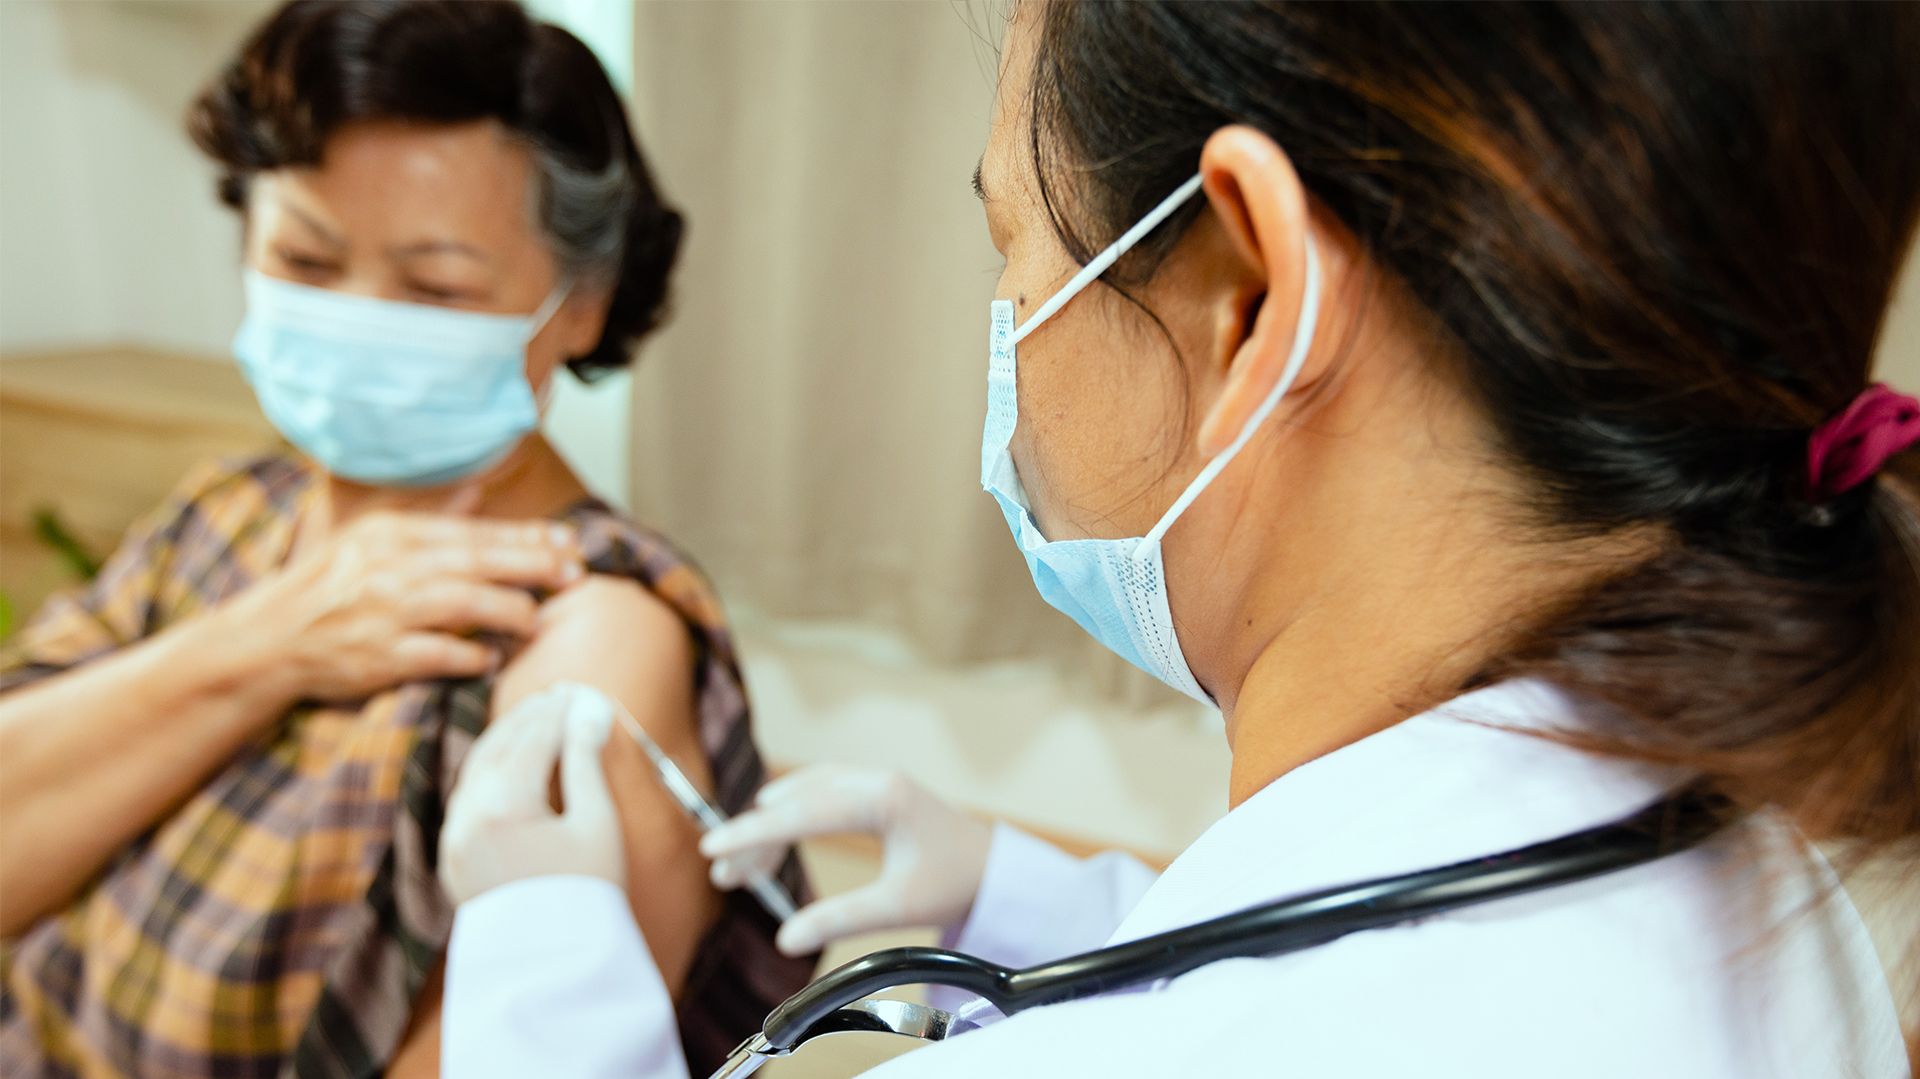 Laos lässt sich impfen: Frau erhält von einer Ärztin eine Impfung - KSW Laos